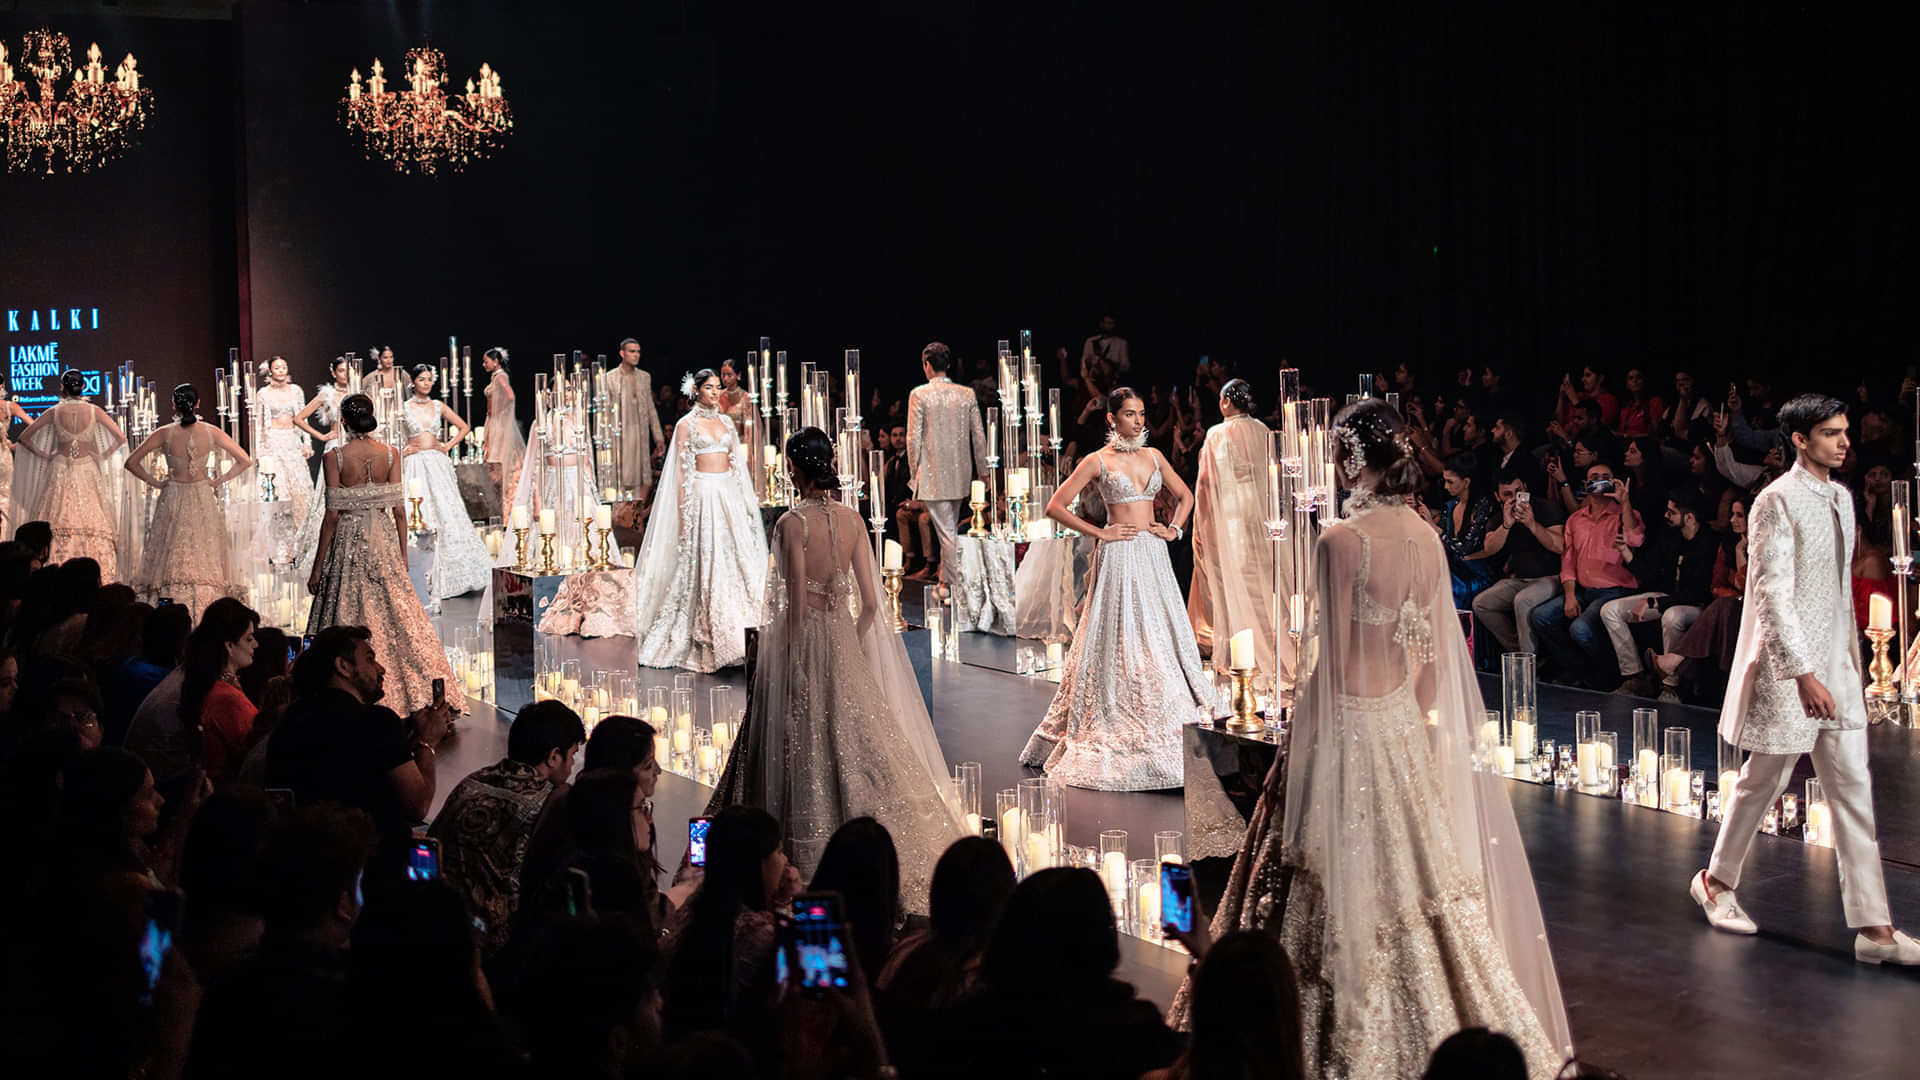 Indian Wedding Dresses: Shop Designer Bridal Dresses Online - KALKI Fashion